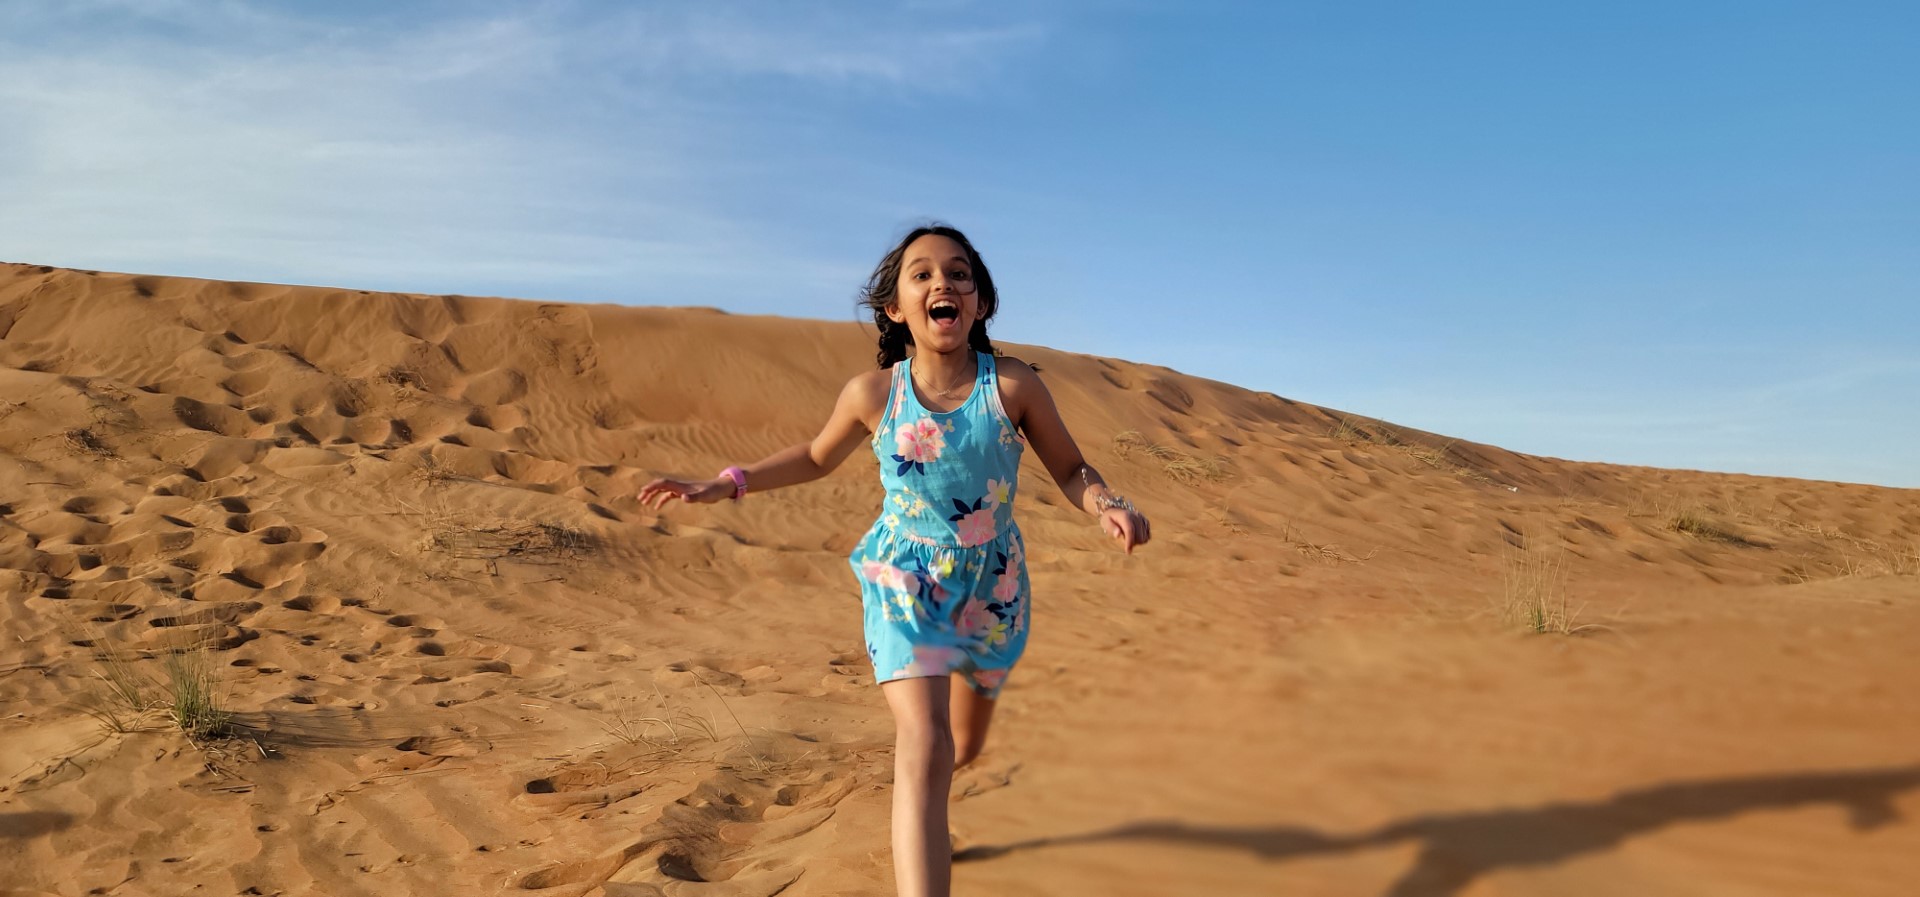 girl in blue dress running in the Arabian desert i